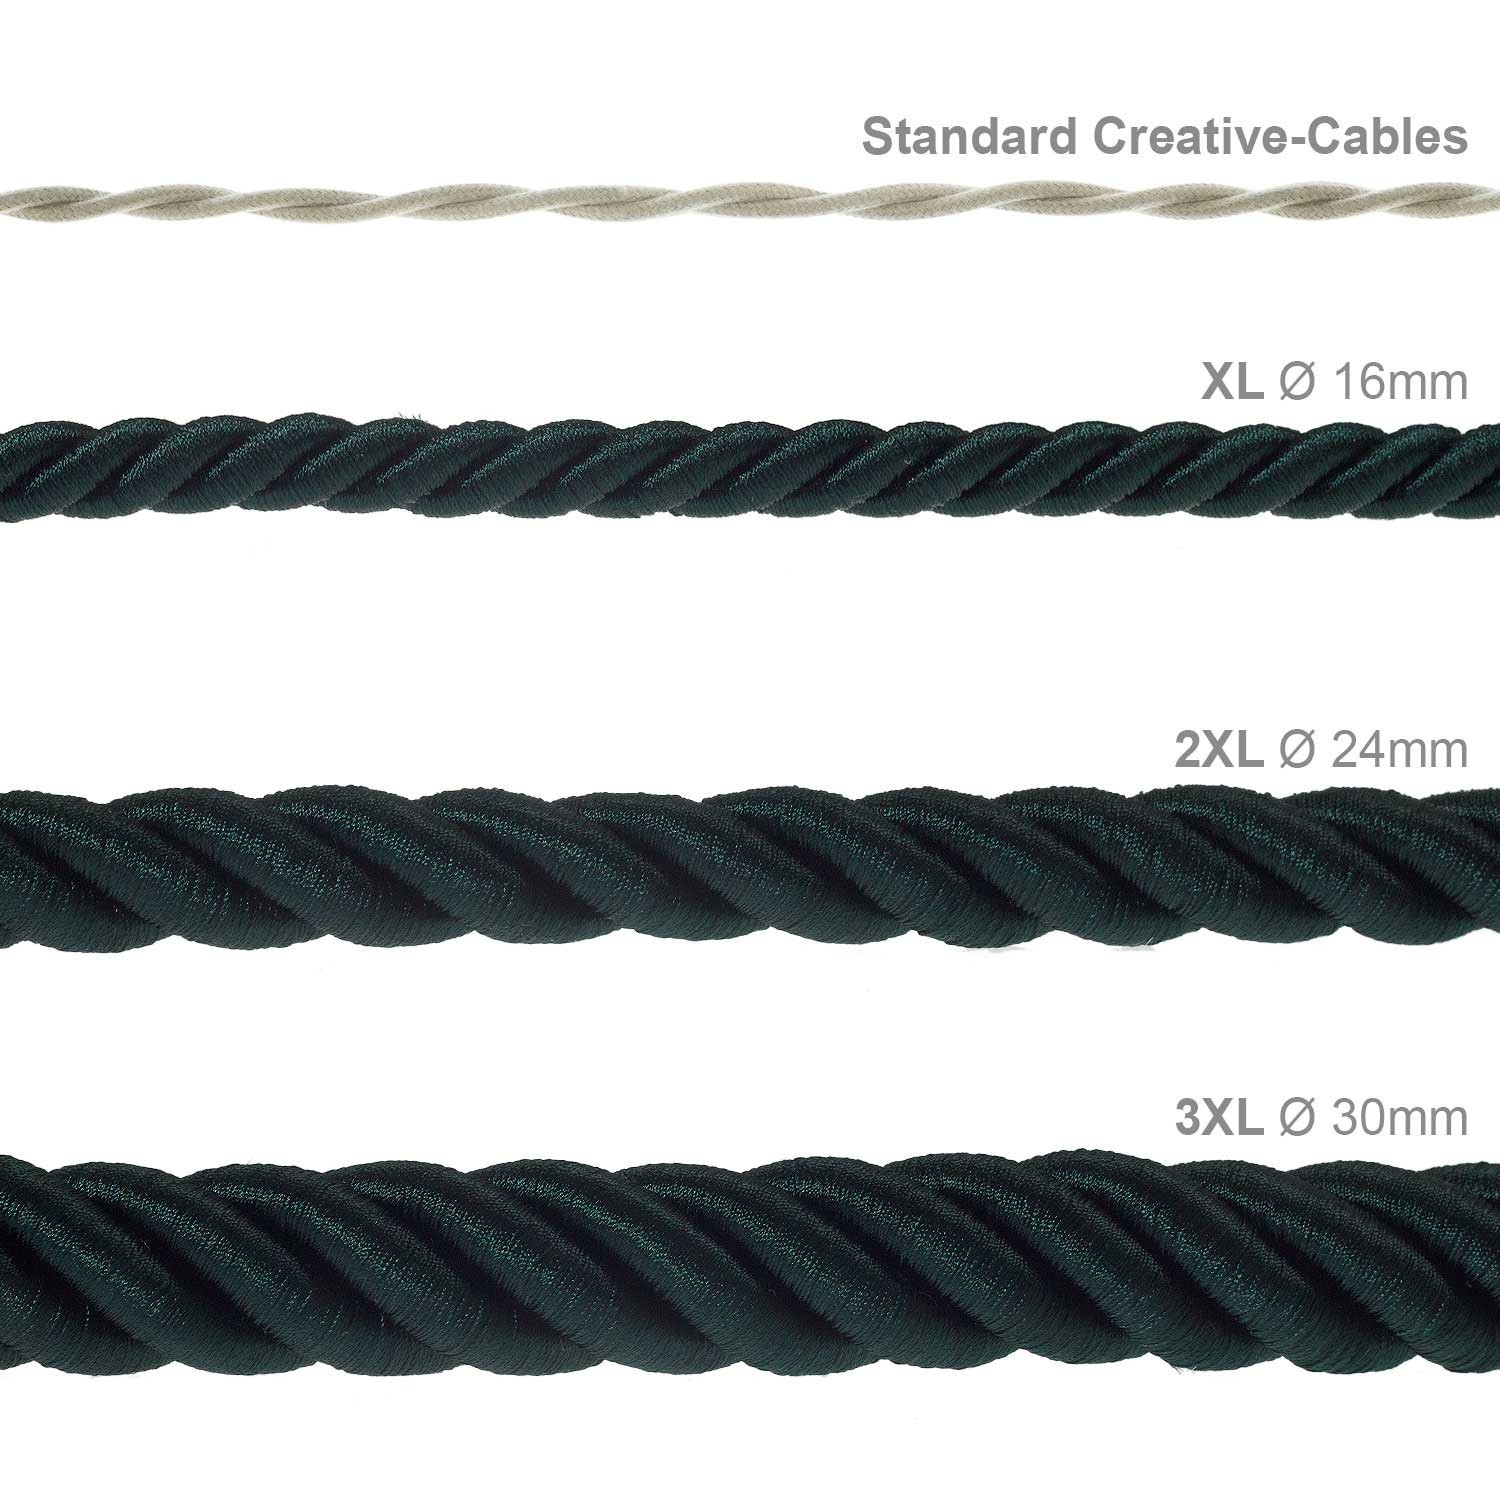 Cordón 3XL, cable eléctrico 3x0,75, recubierto en tejido verde oscuro brillante. Diámetro: 30mm.